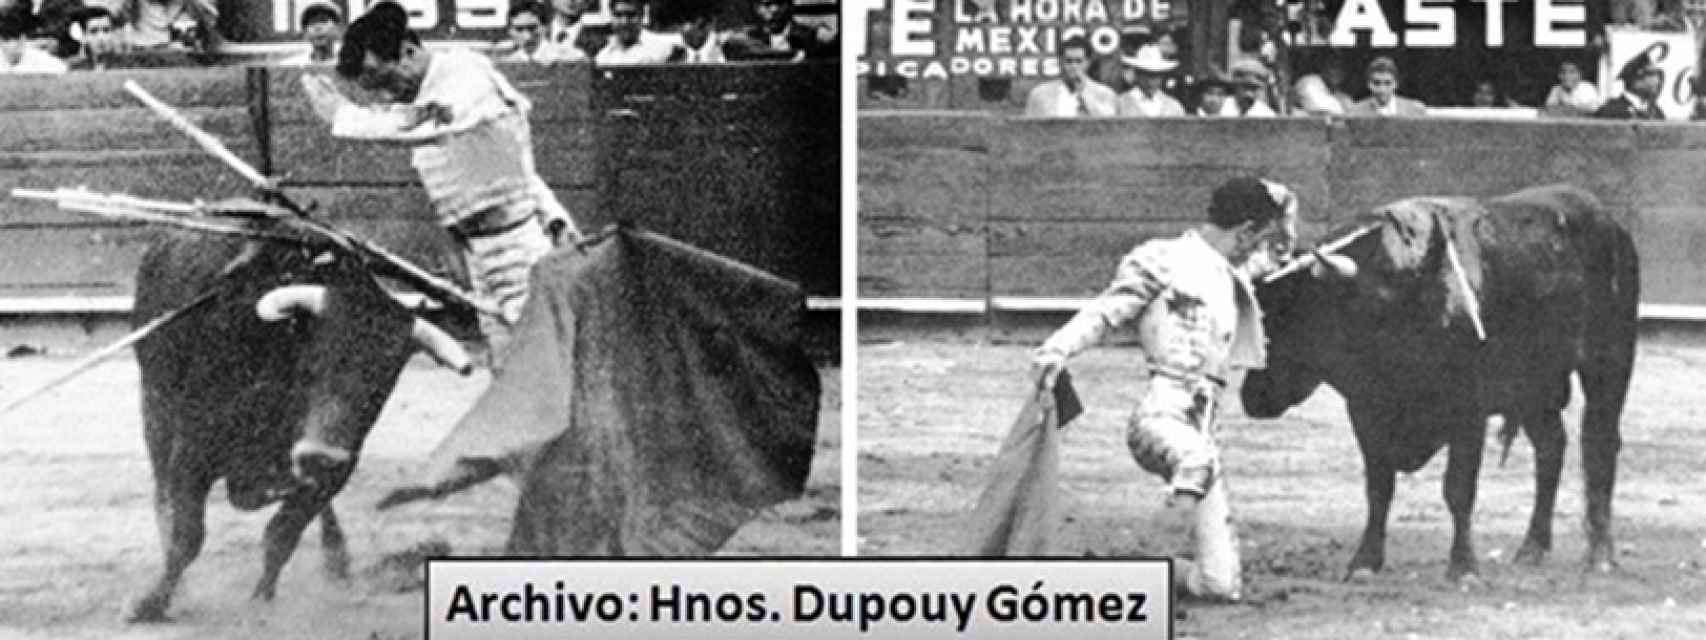 Imagen de la “arrucina” y el desplante del “Teléfono”, este lo realizó por vez primera en España en su debut vallisoletano de 1944